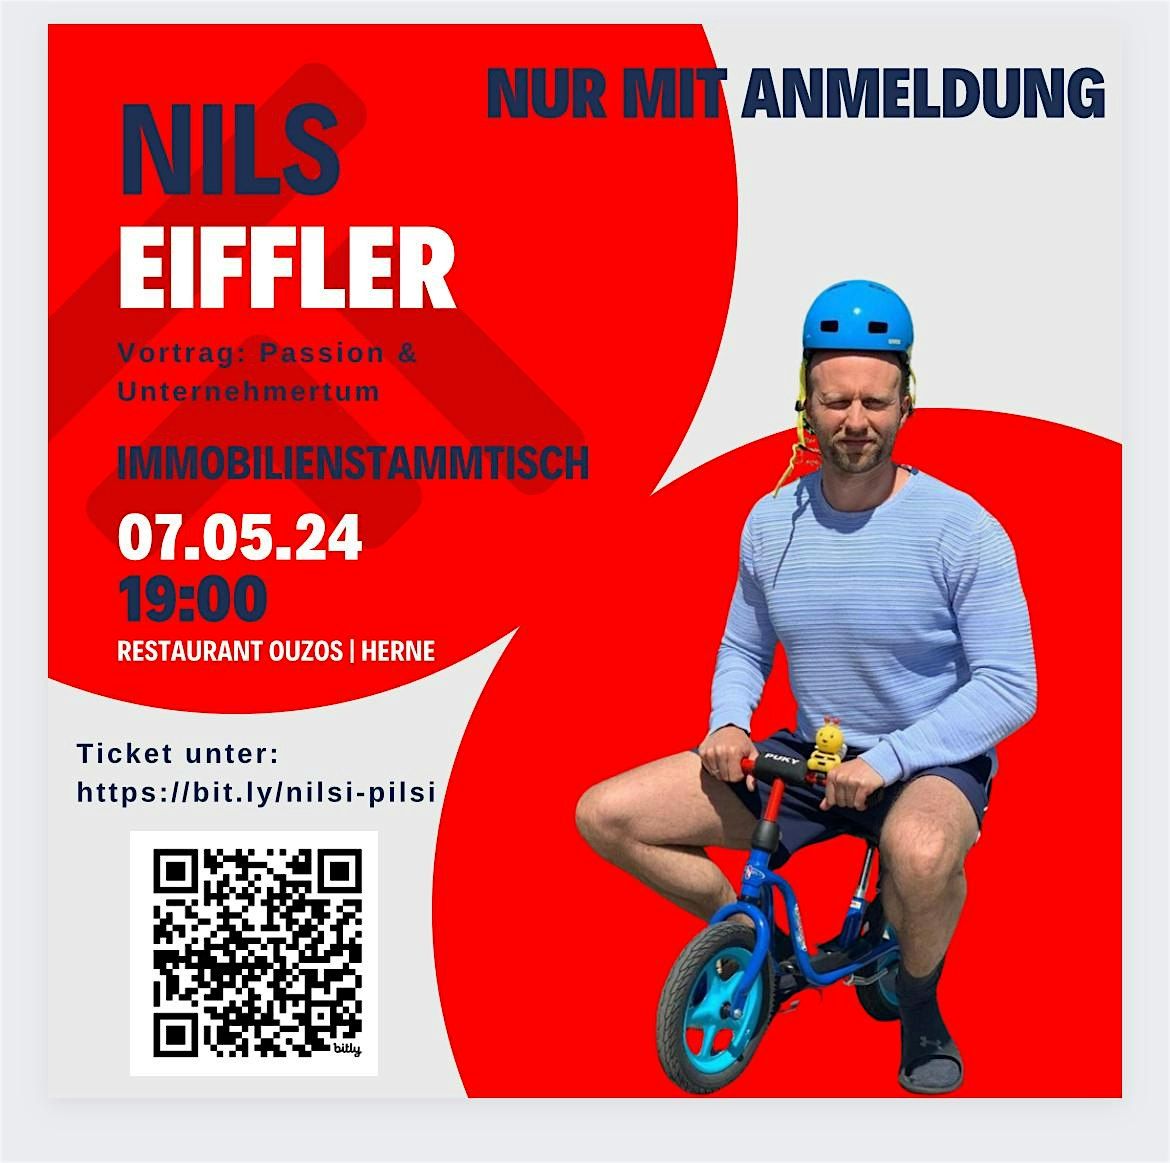 Immobilienstammtisch mit Vortrag von Nils Eiffler